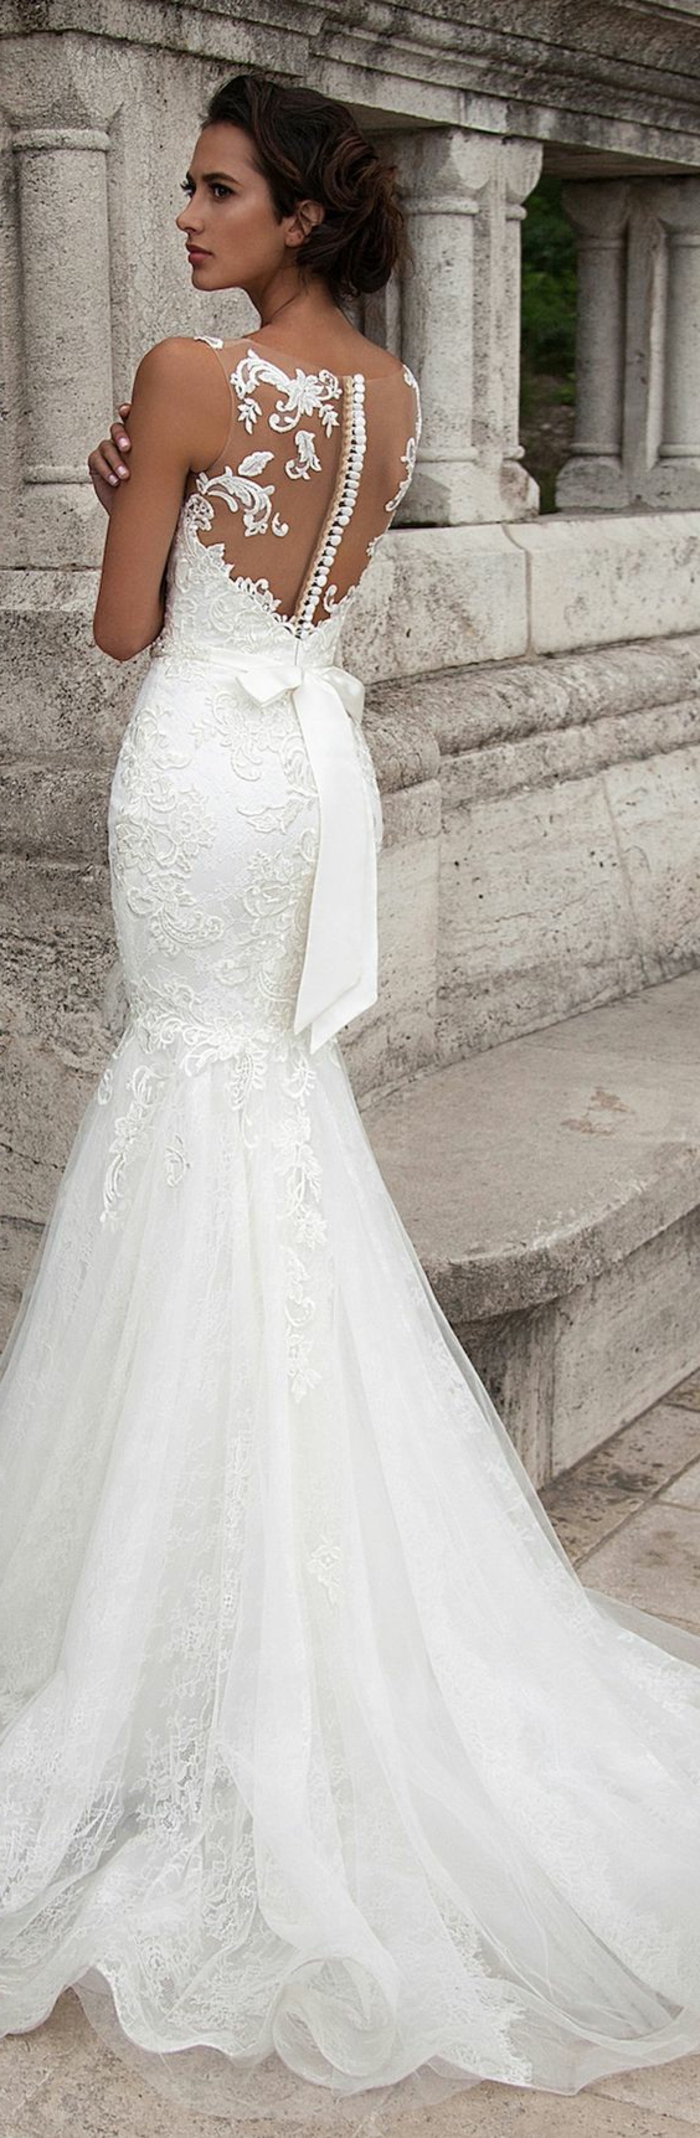 robe mariage civil en blanc, avec dos transparent et des boutons blancs, grand nœud papillon su la taille derrière, robe moulante qui se termine par une partie large en tulle blanc